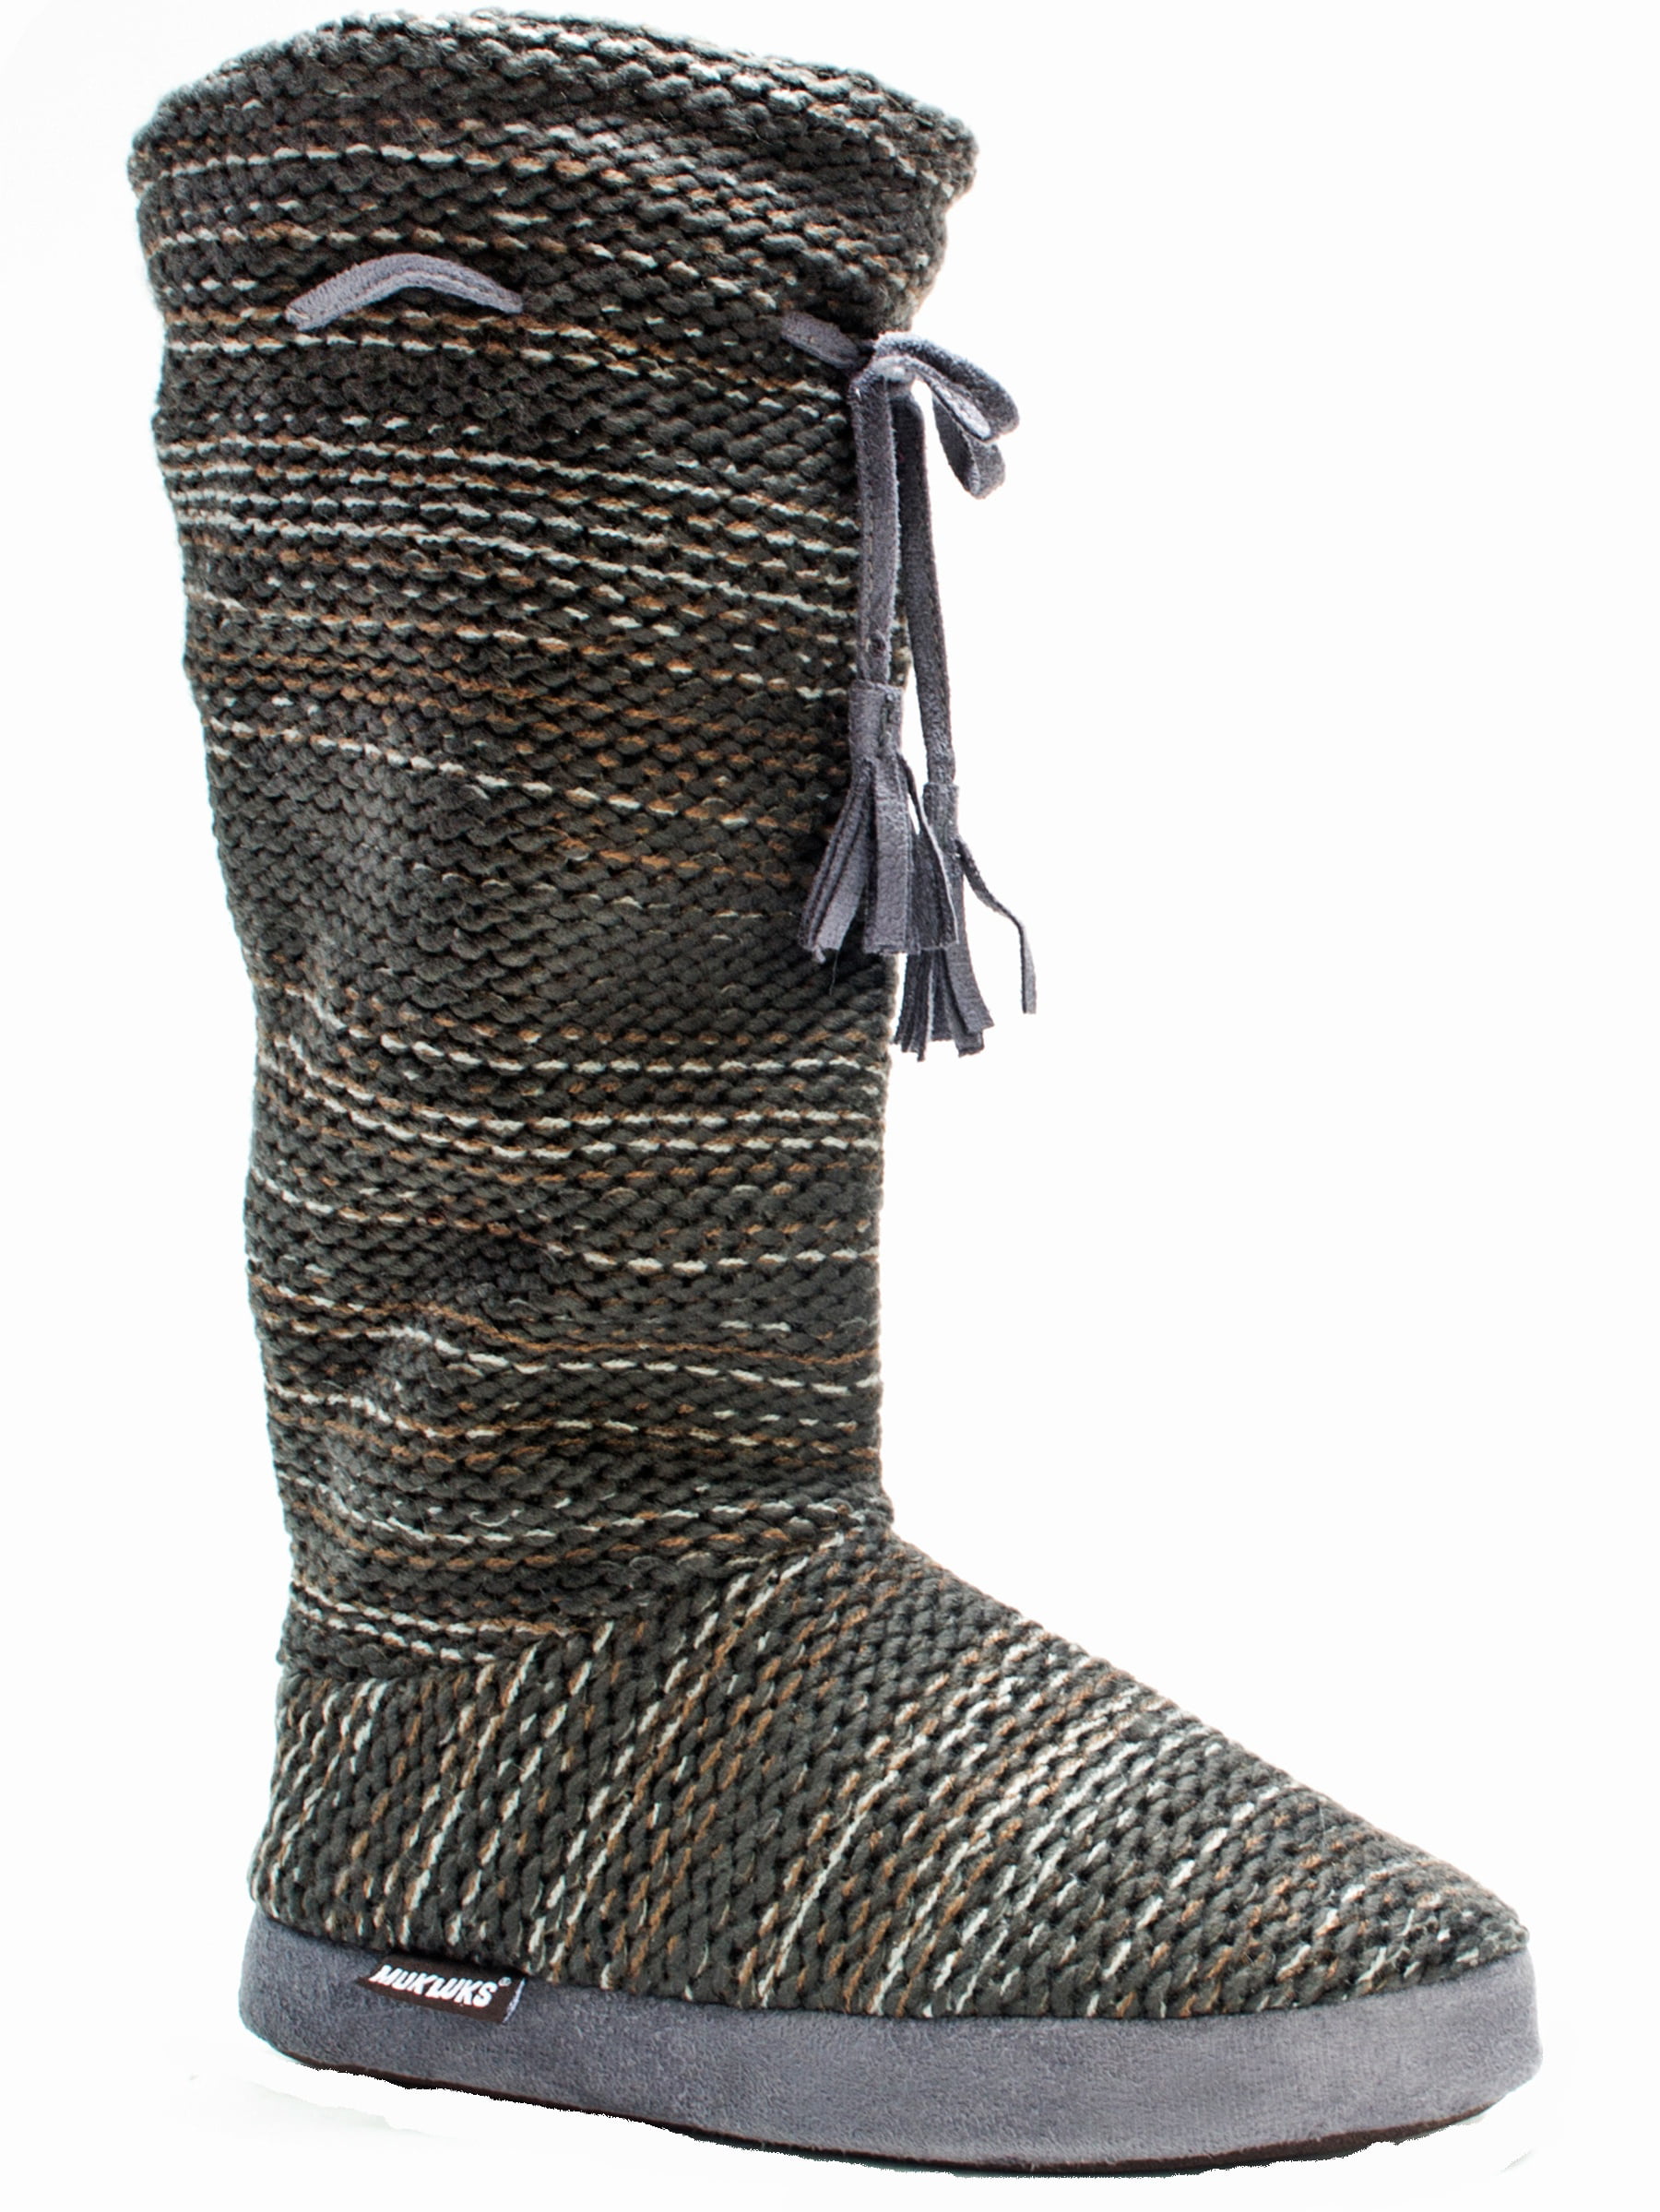 Muk Luks Grommet Women's Slipper Knit Sweater Boots Sherpa Size 5-6 S ...